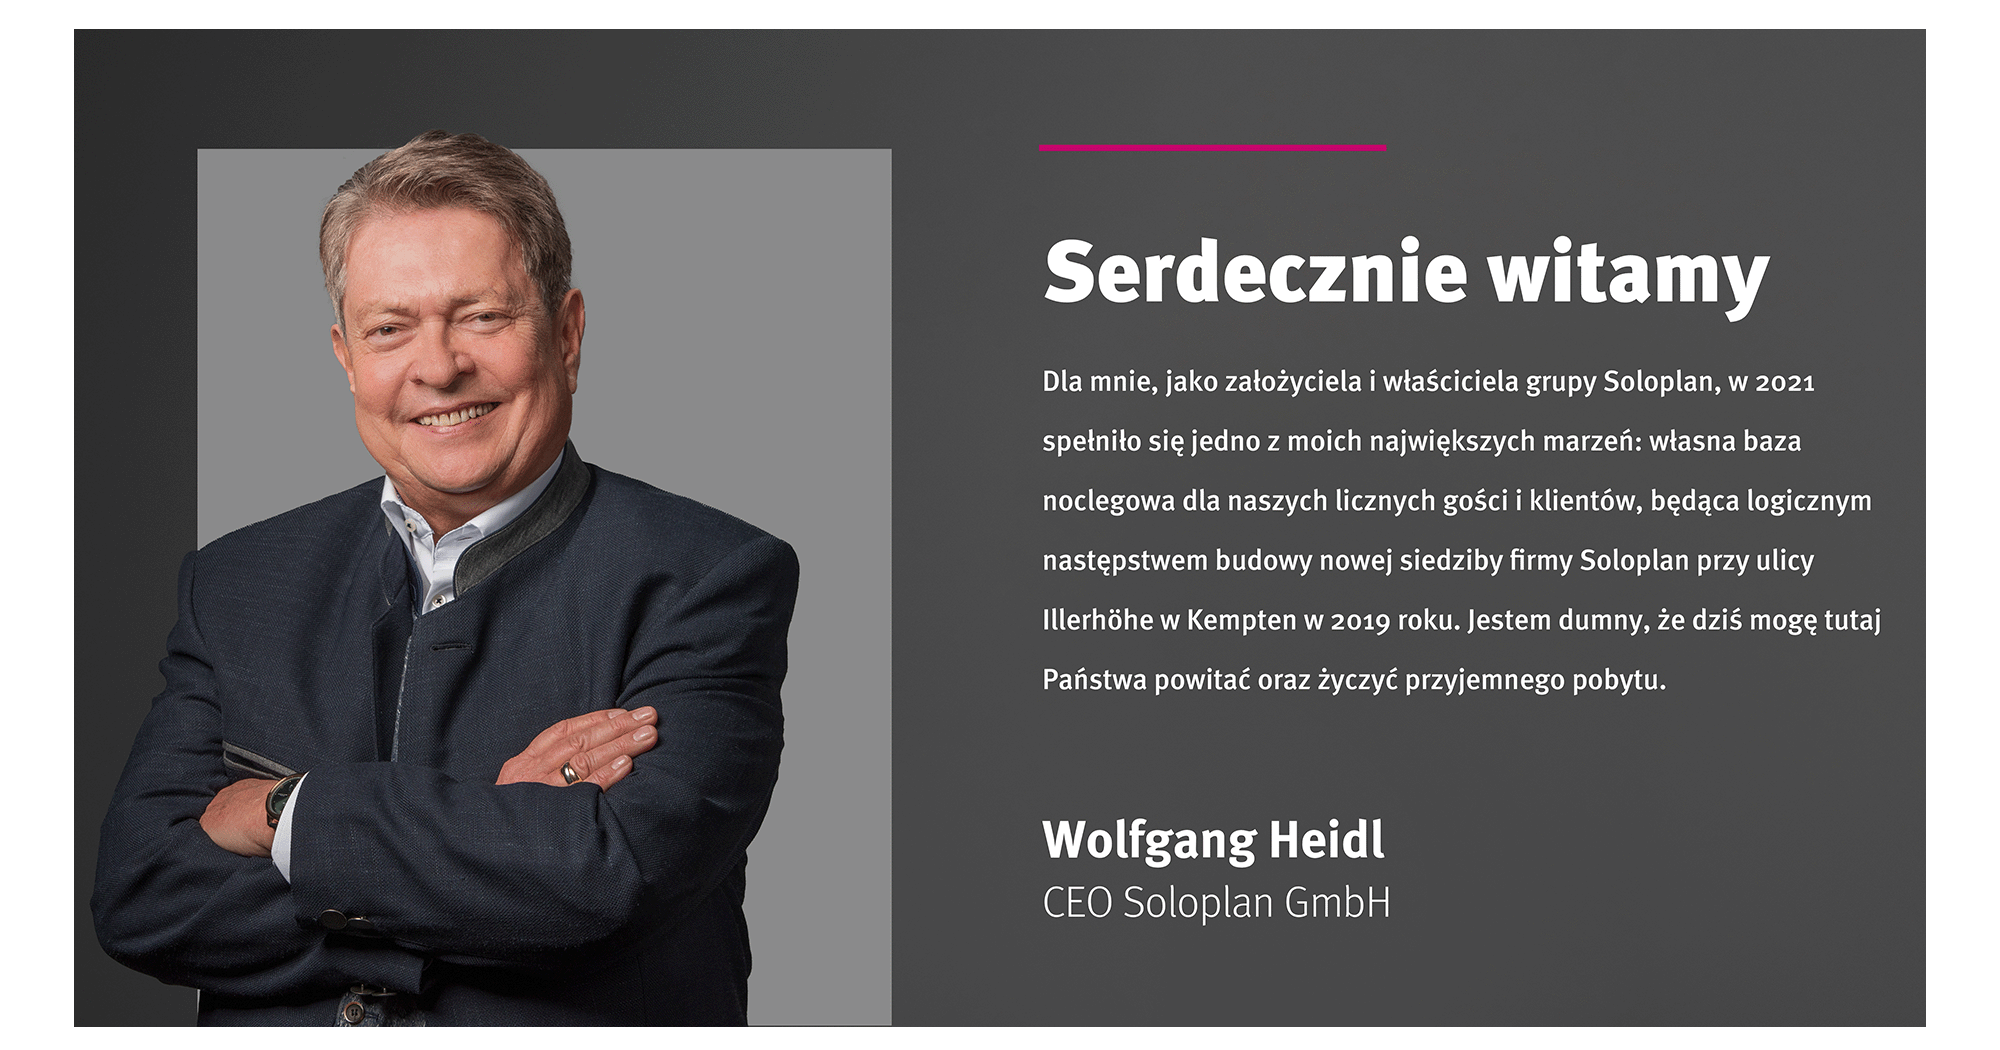 SCR-Serdecznie-witamy-Heidl-2000x1050